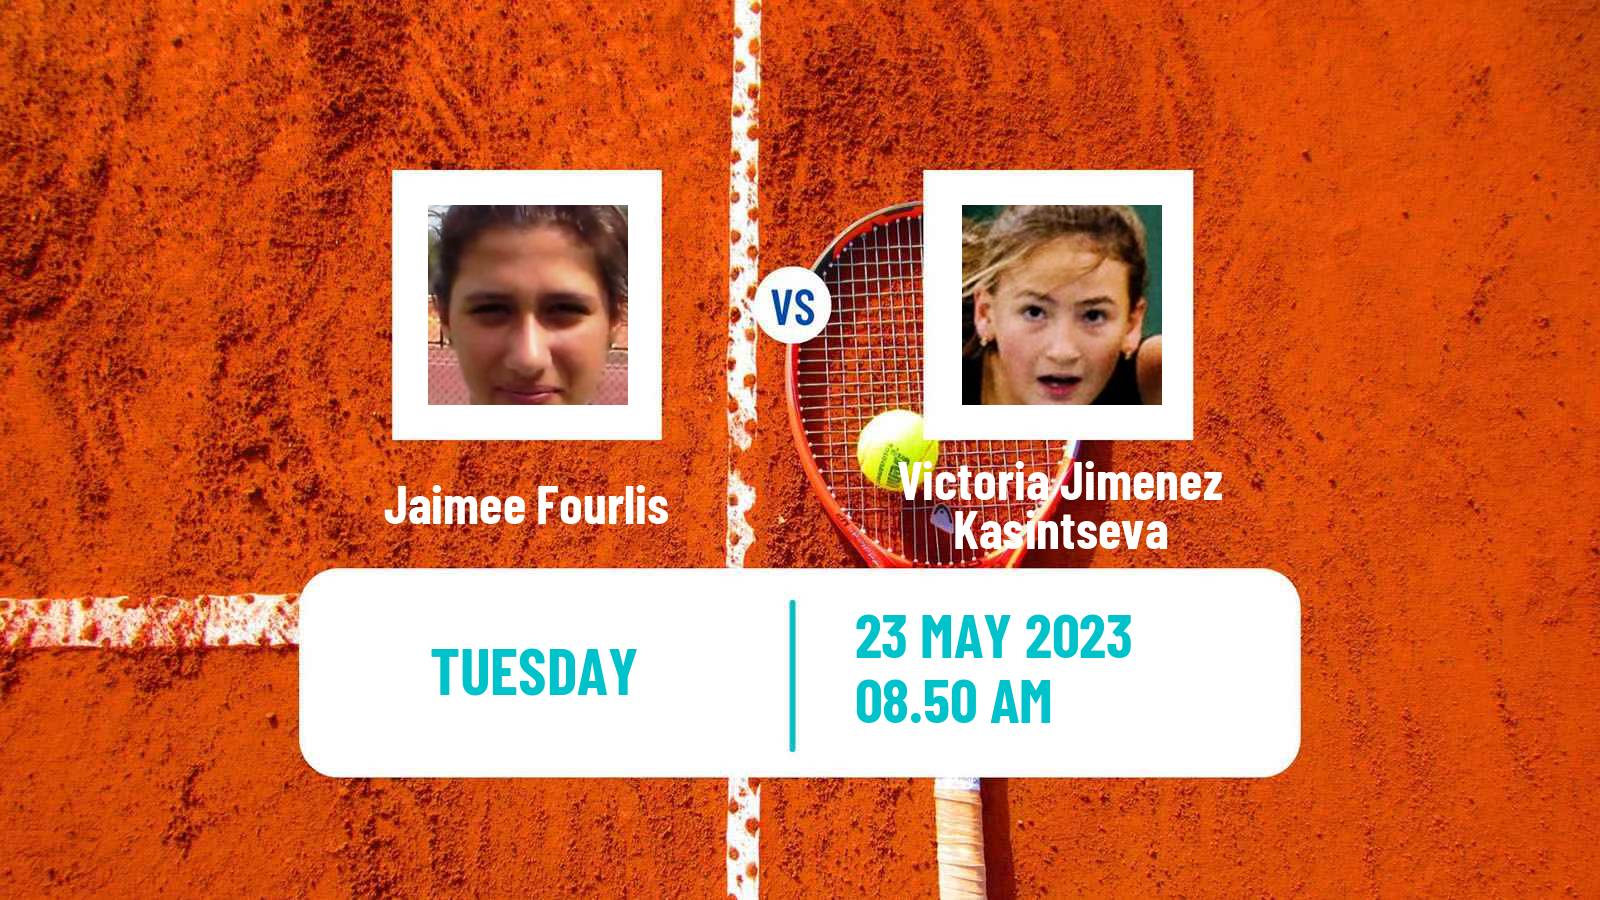 Tennis WTA Roland Garros Jaimee Fourlis - Victoria Jimenez Kasintseva